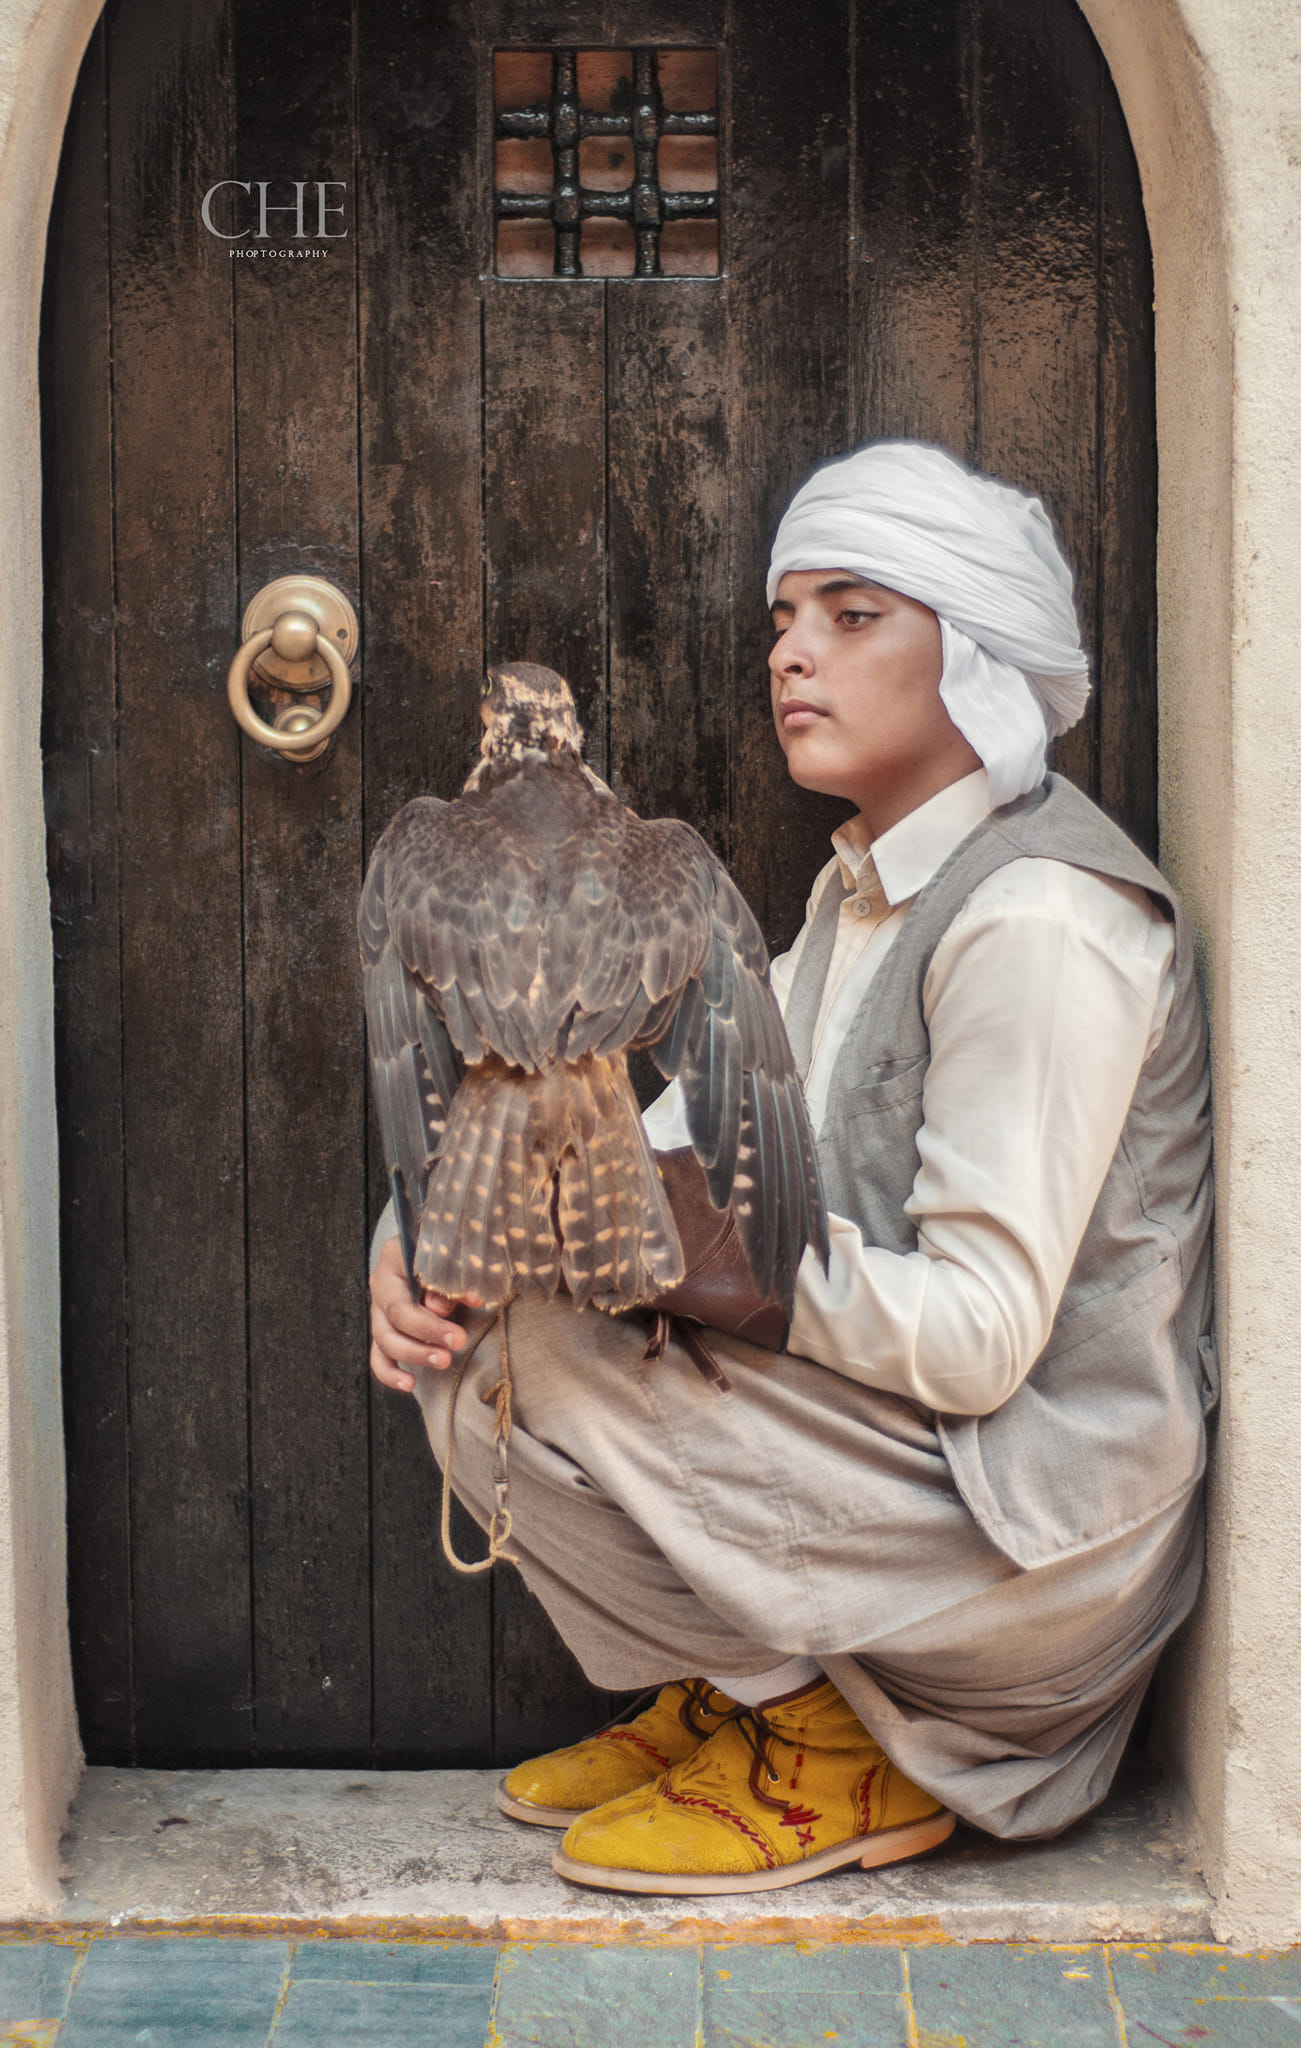 ouled nail fauconnier algérien Algerian falconer الصيد بالجوارح و الصقور بيازرة الجزائر